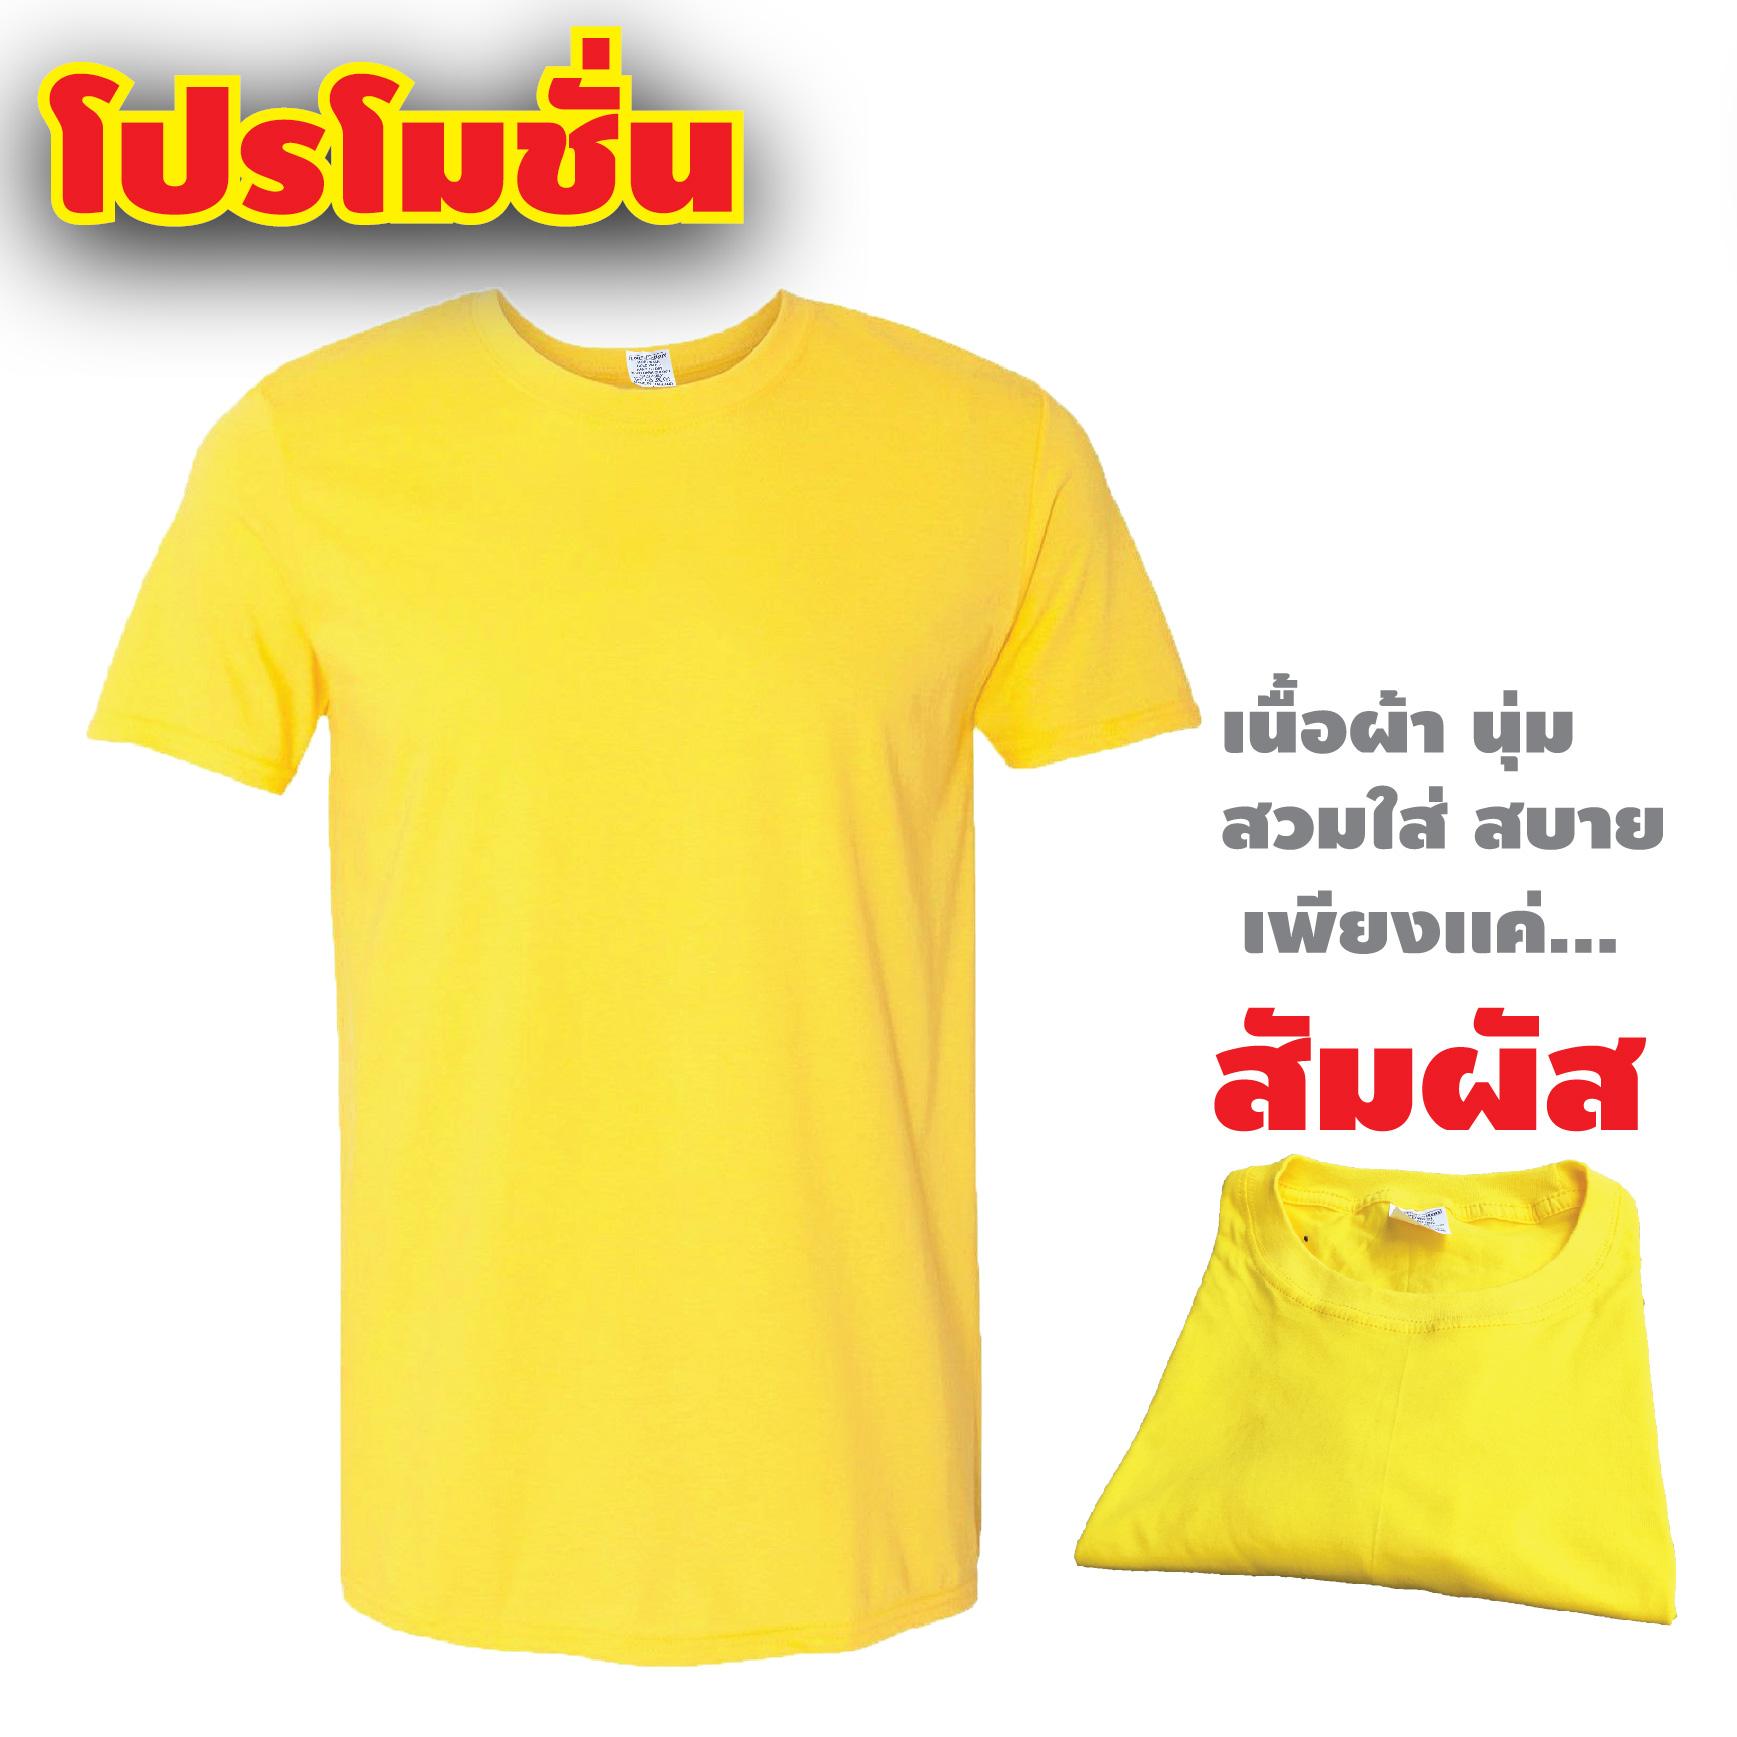 เสื้อยืด สีเหลือง สีสวย คุณภาพดี ราคาประหยัด